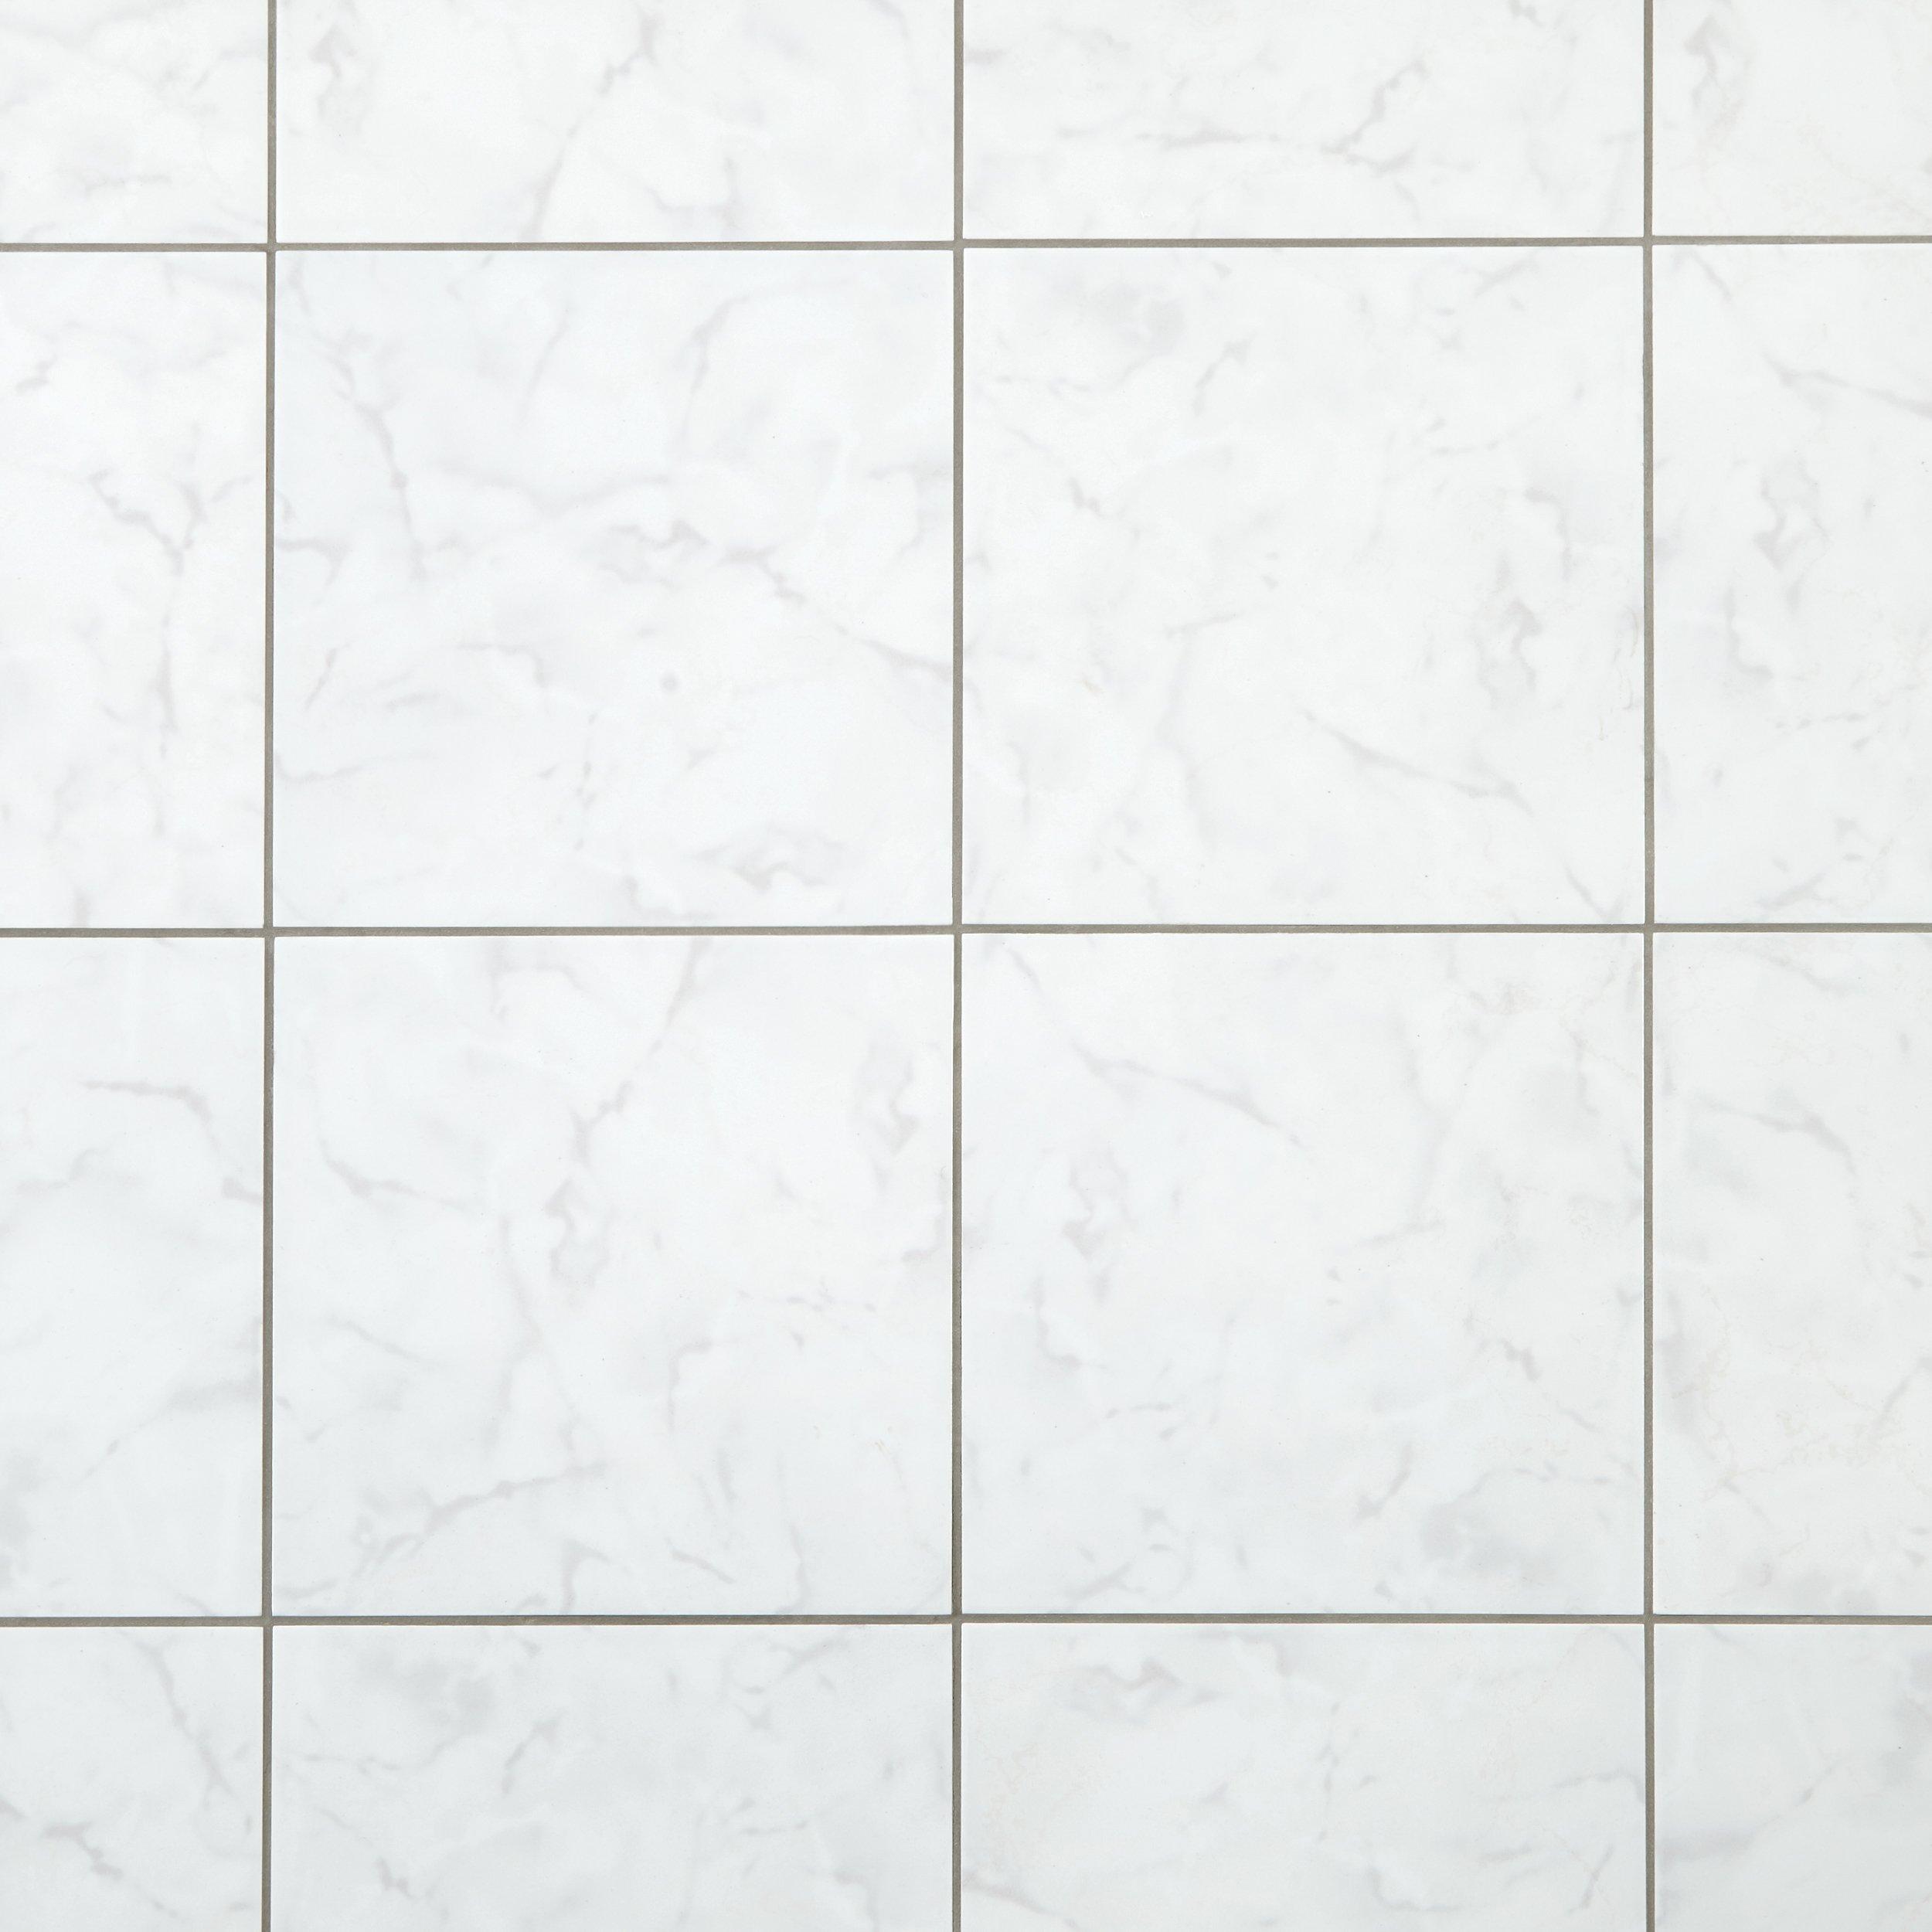 Cristal White High Gloss Ceramic Tile, White Floor Tiles